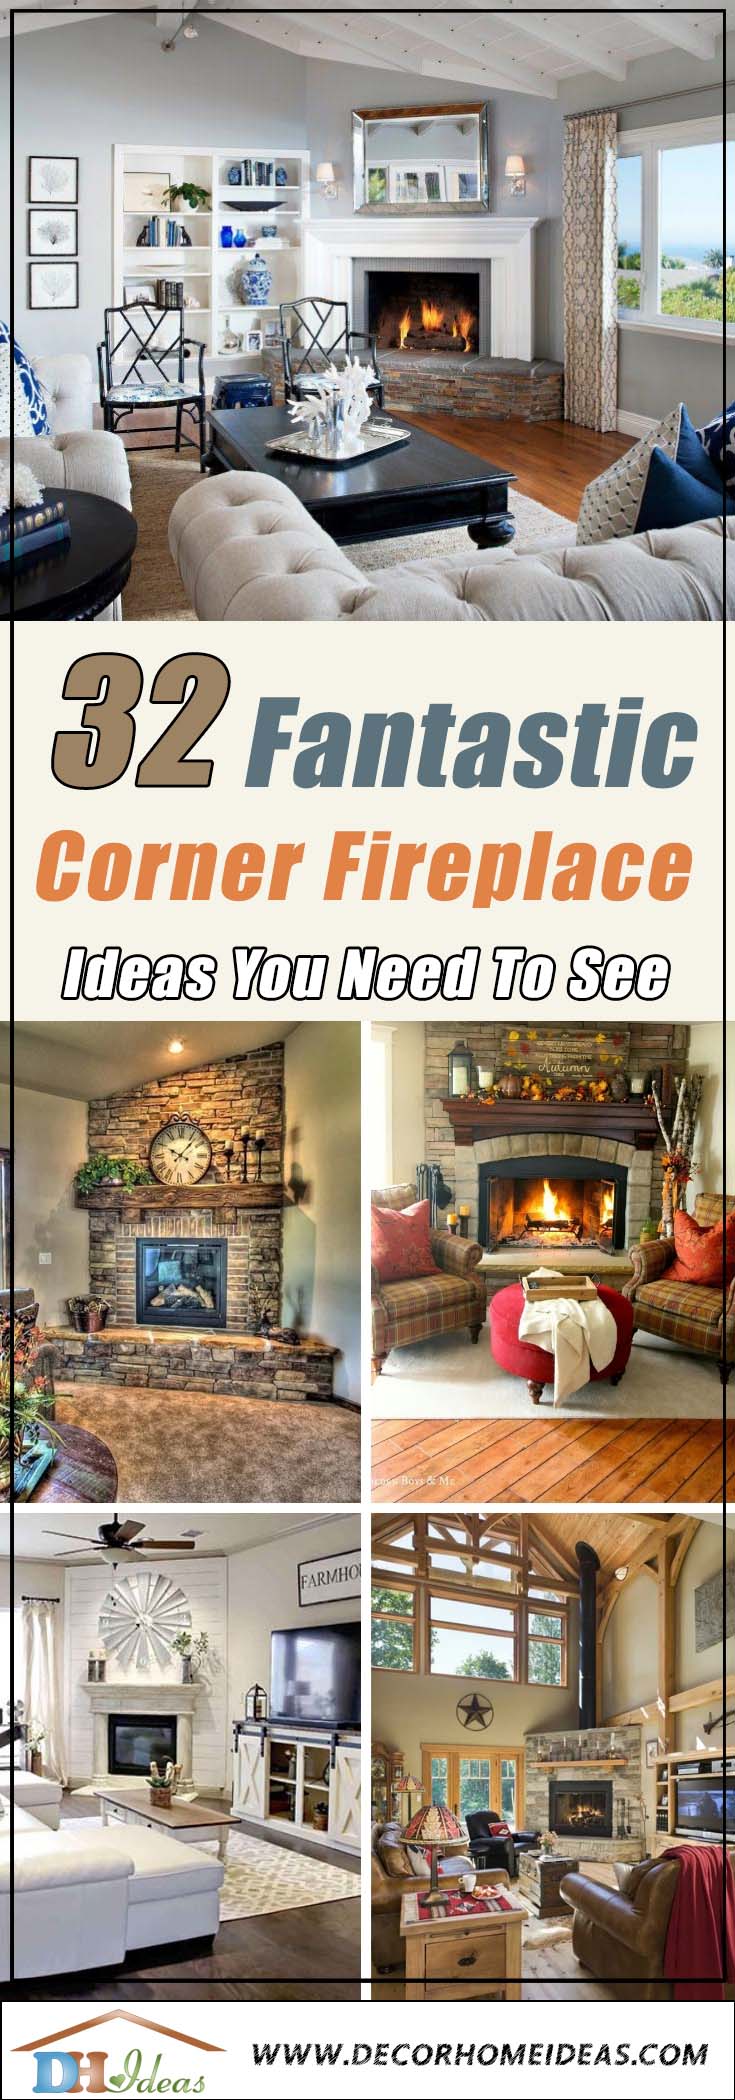 Corner Fireplace Ideas #fireplace #fireplaceideas #corner #decorhomeideas